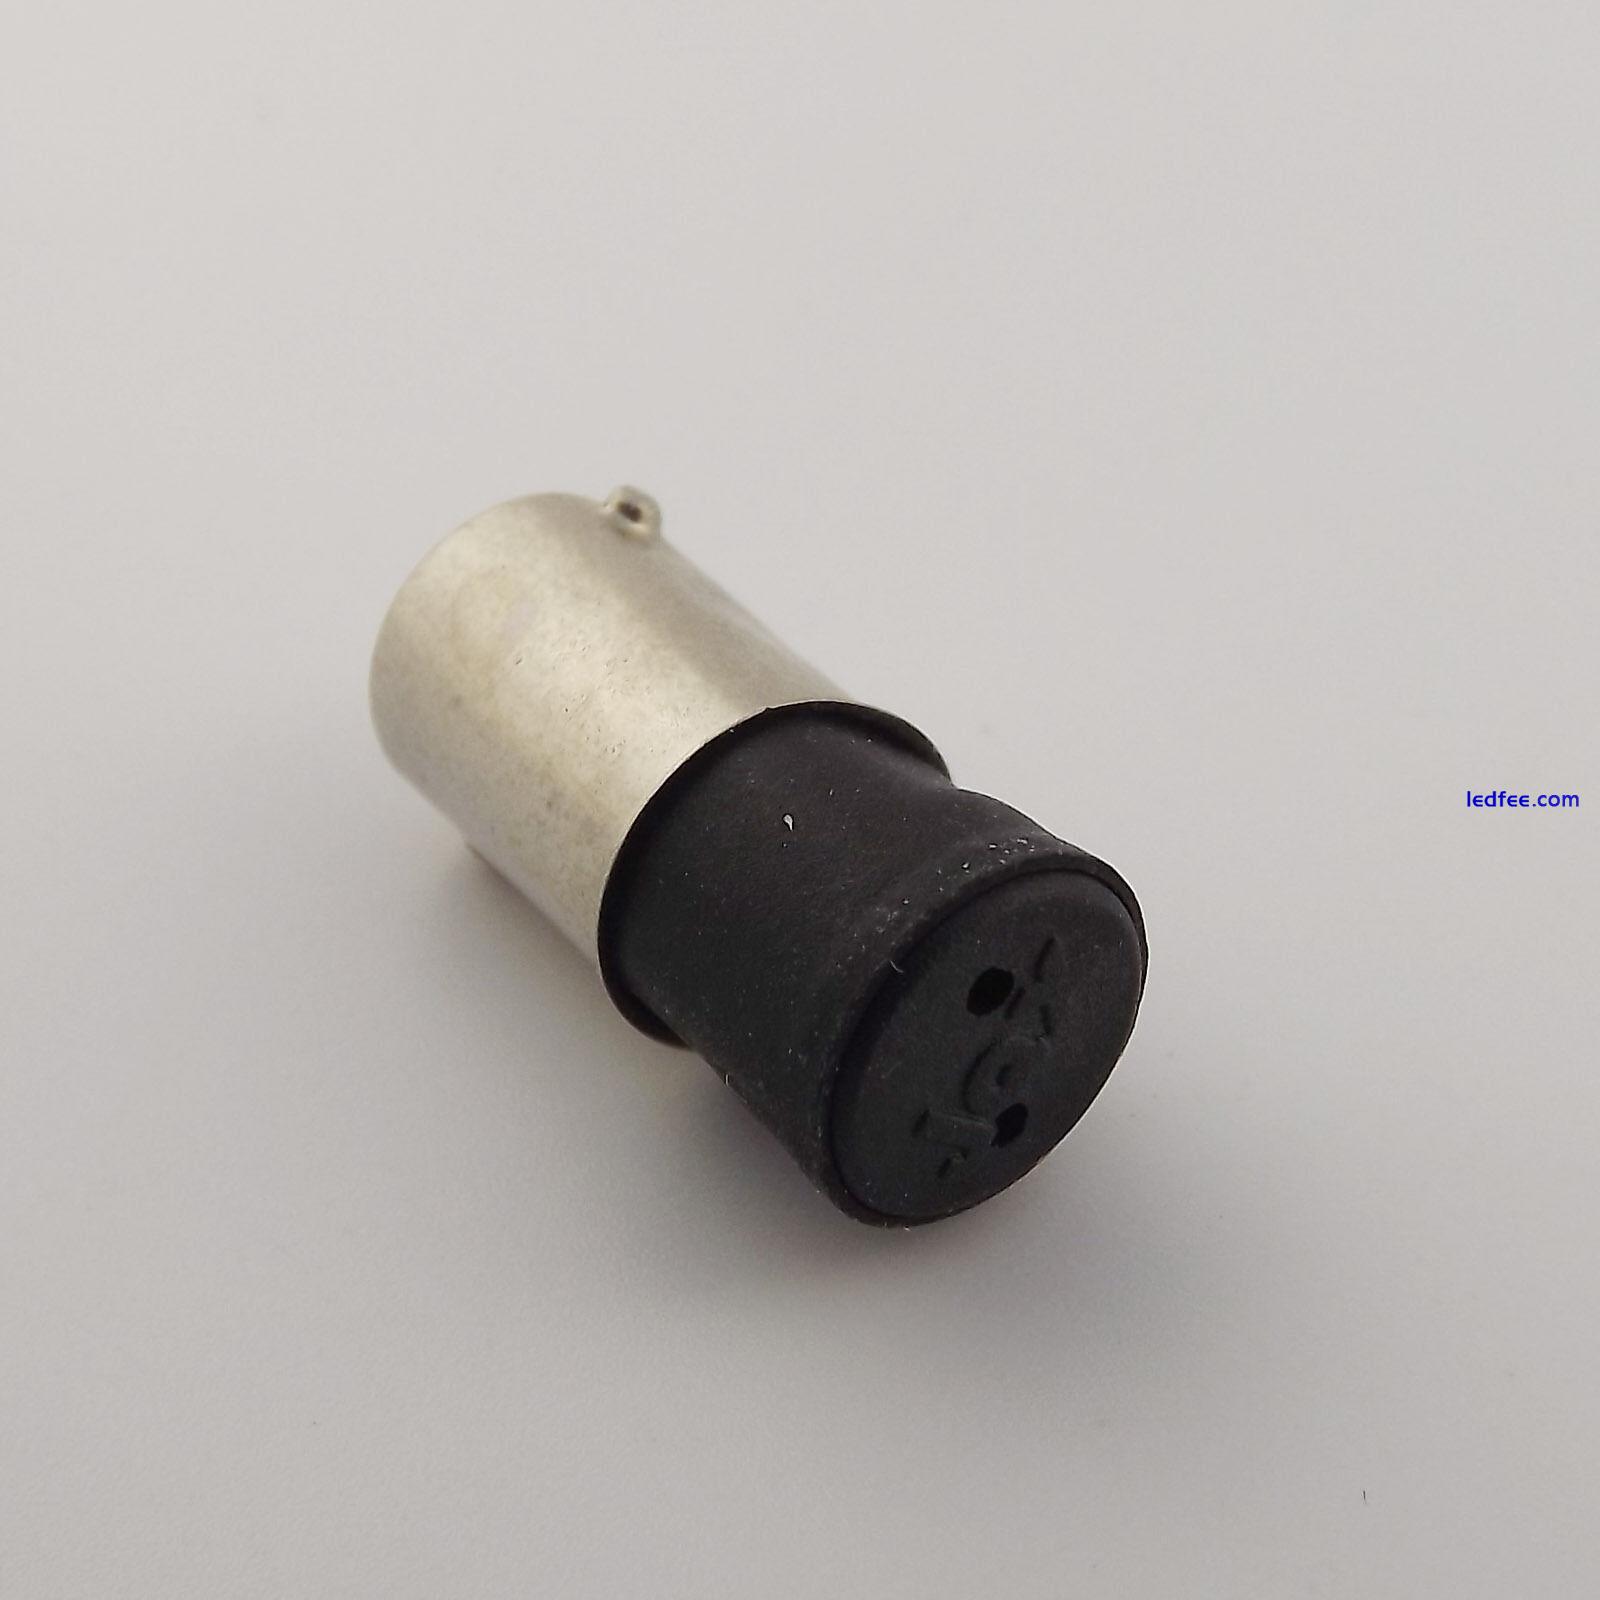 BA9S to G4 Lamp Holder LED Screw Thread Light Bulb Base Socket Adapter Converter 0 